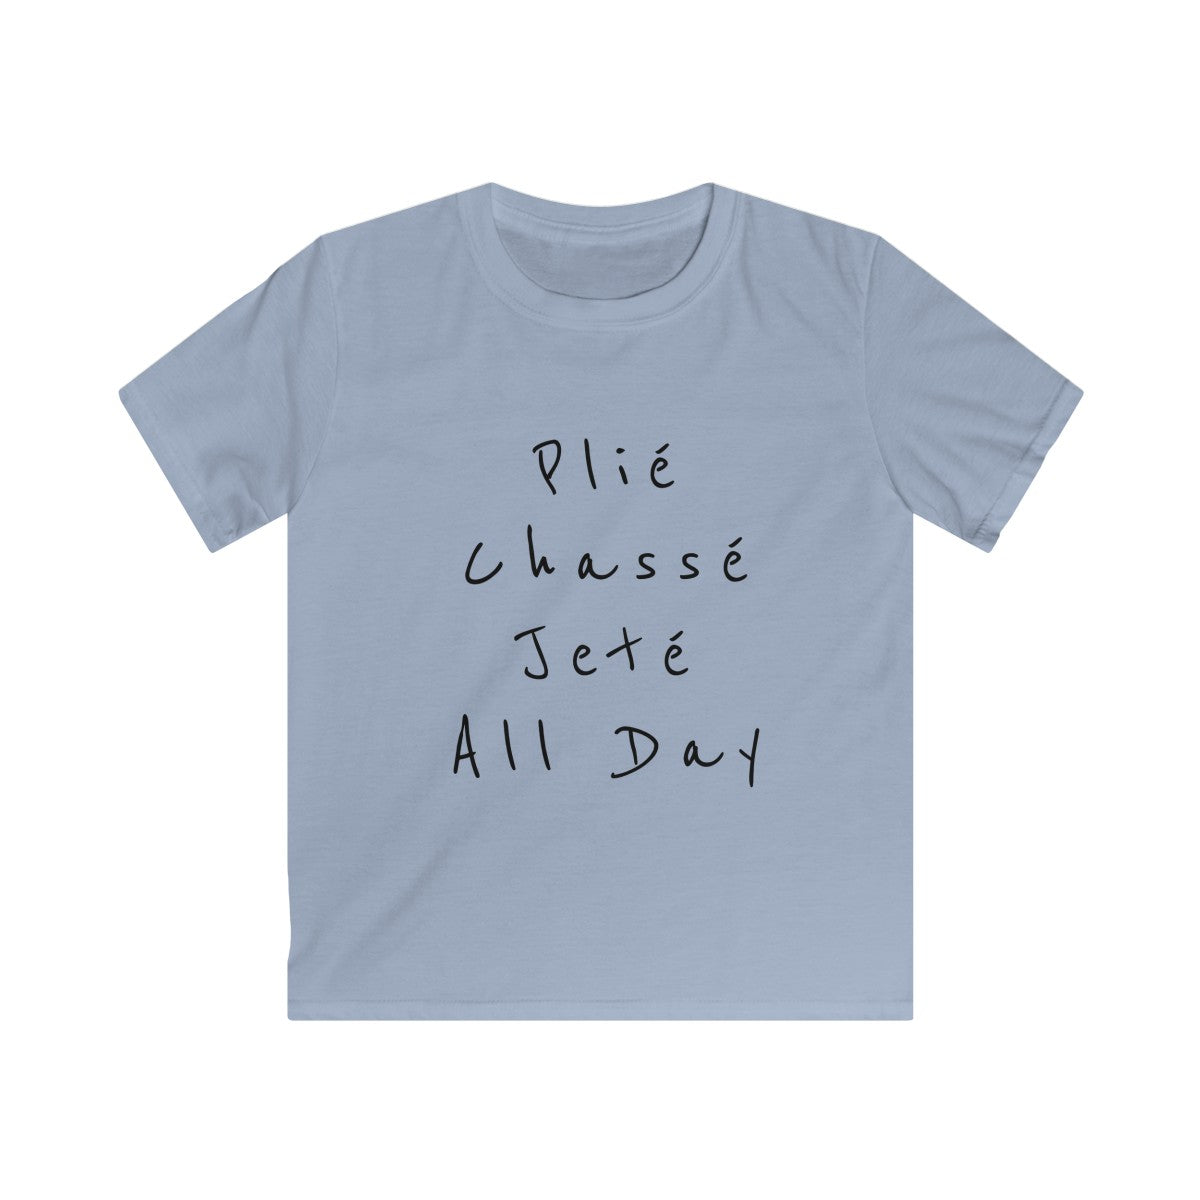 Plié, Chassé, Jeté, All day. Kids Softstyle Tee - SD-style-shop